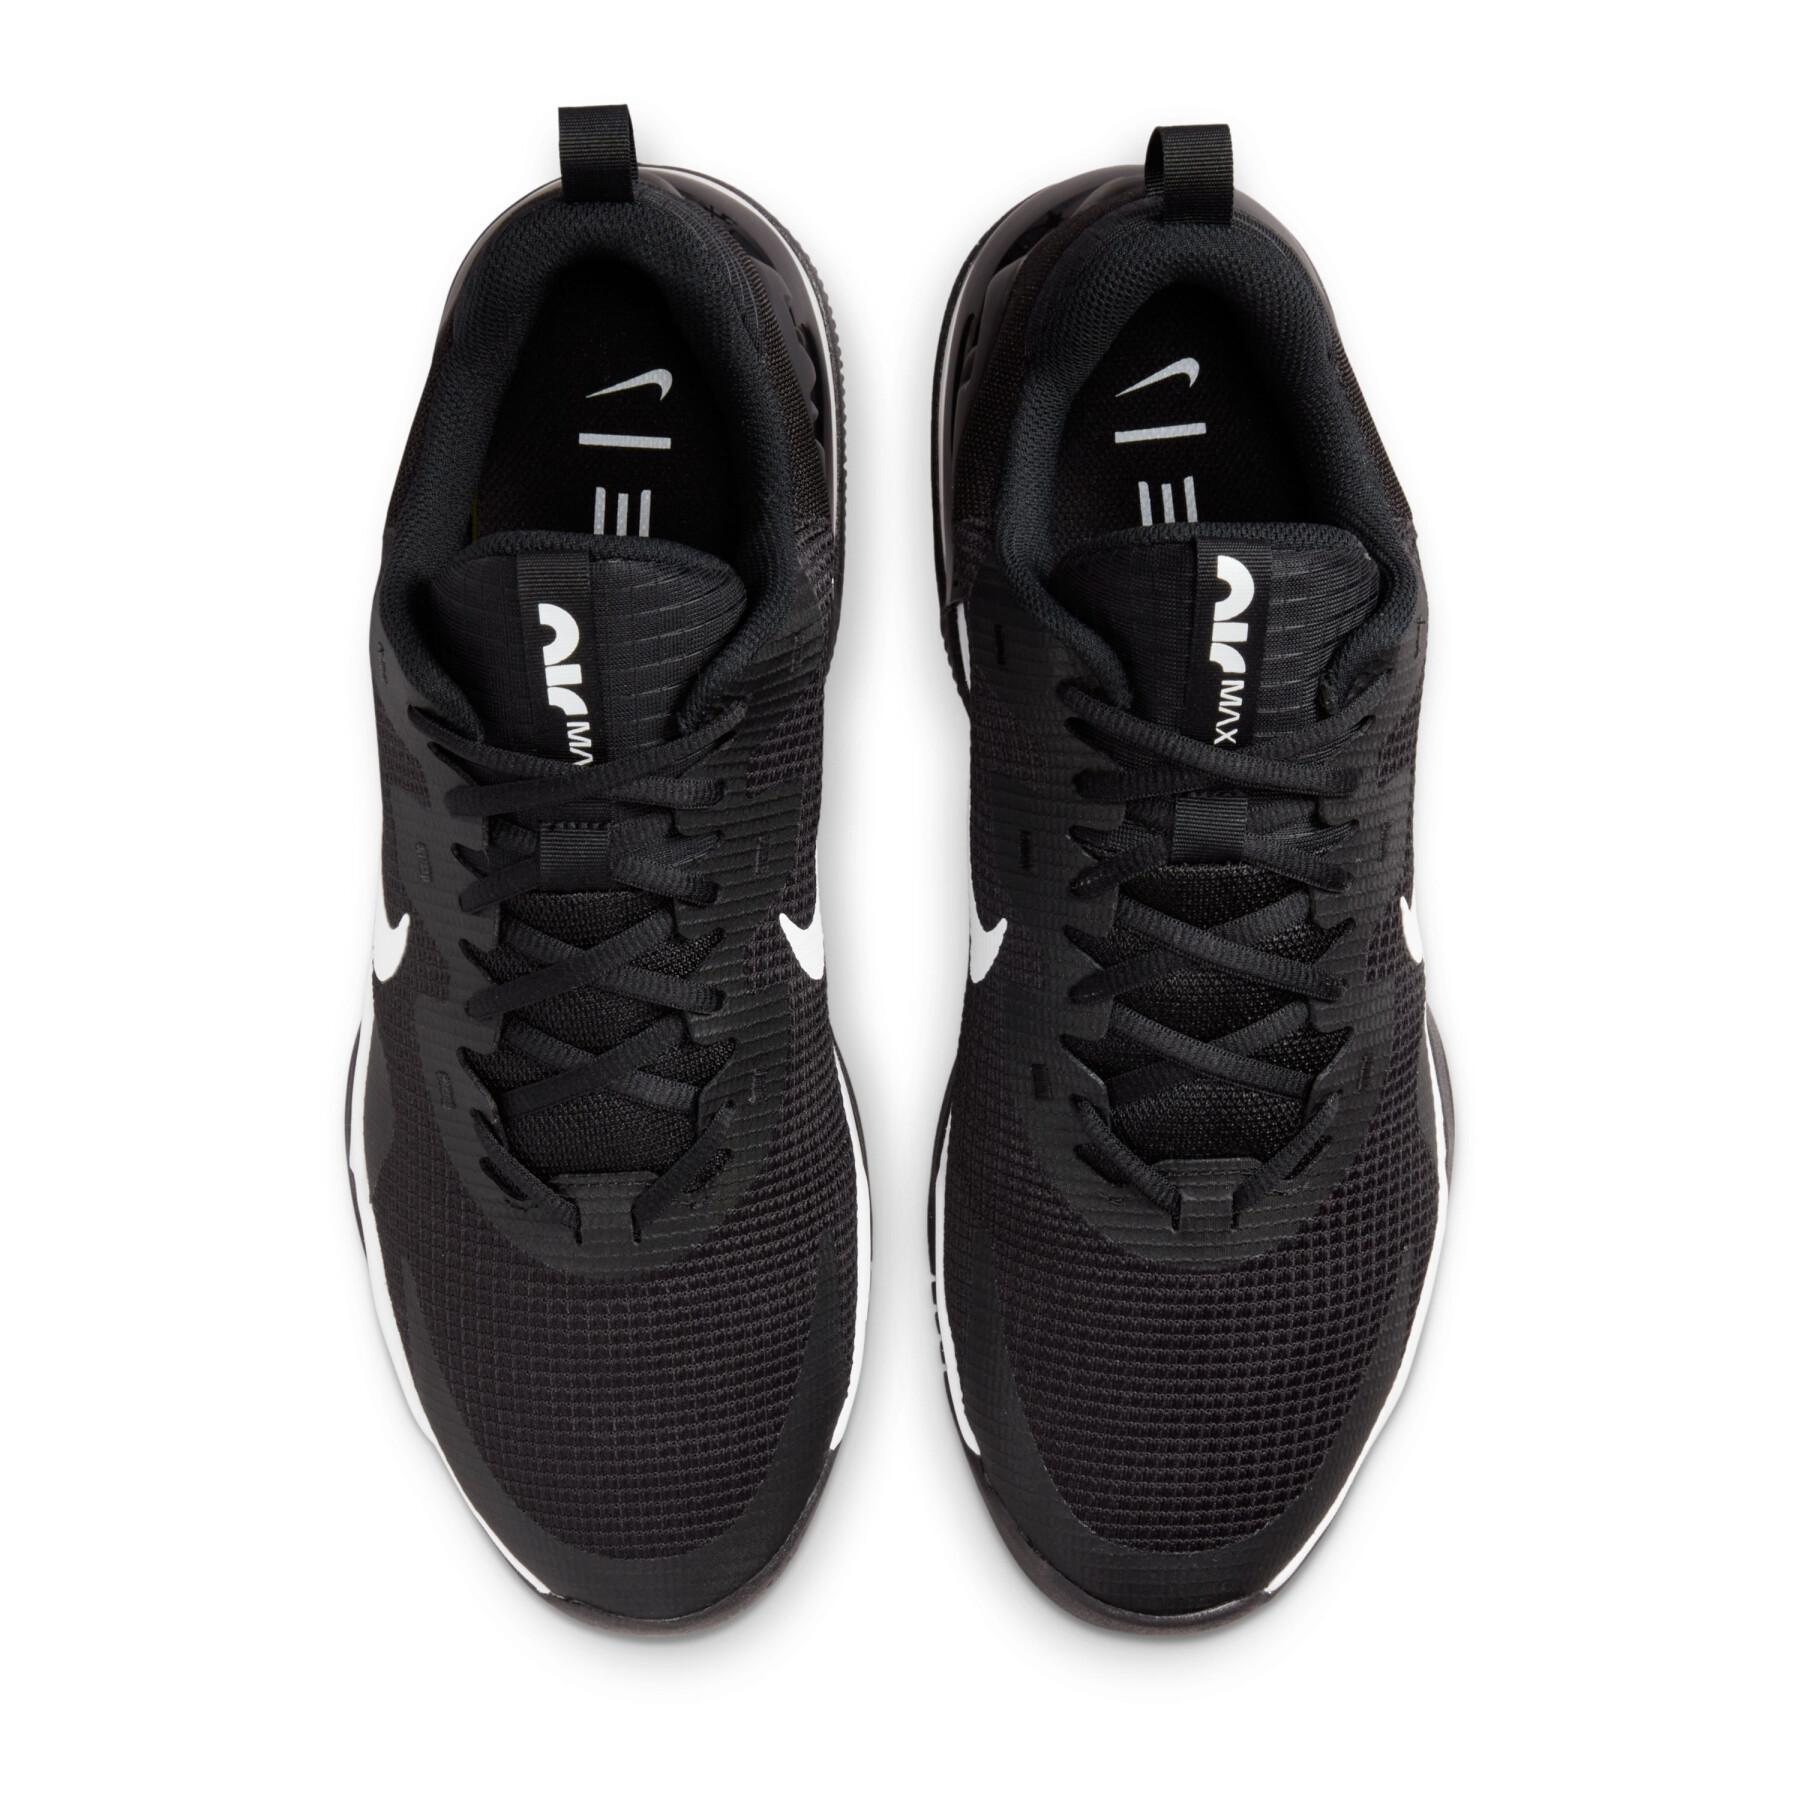 CrossFit Schuhe Nike Air Max Alpha Trainer 5